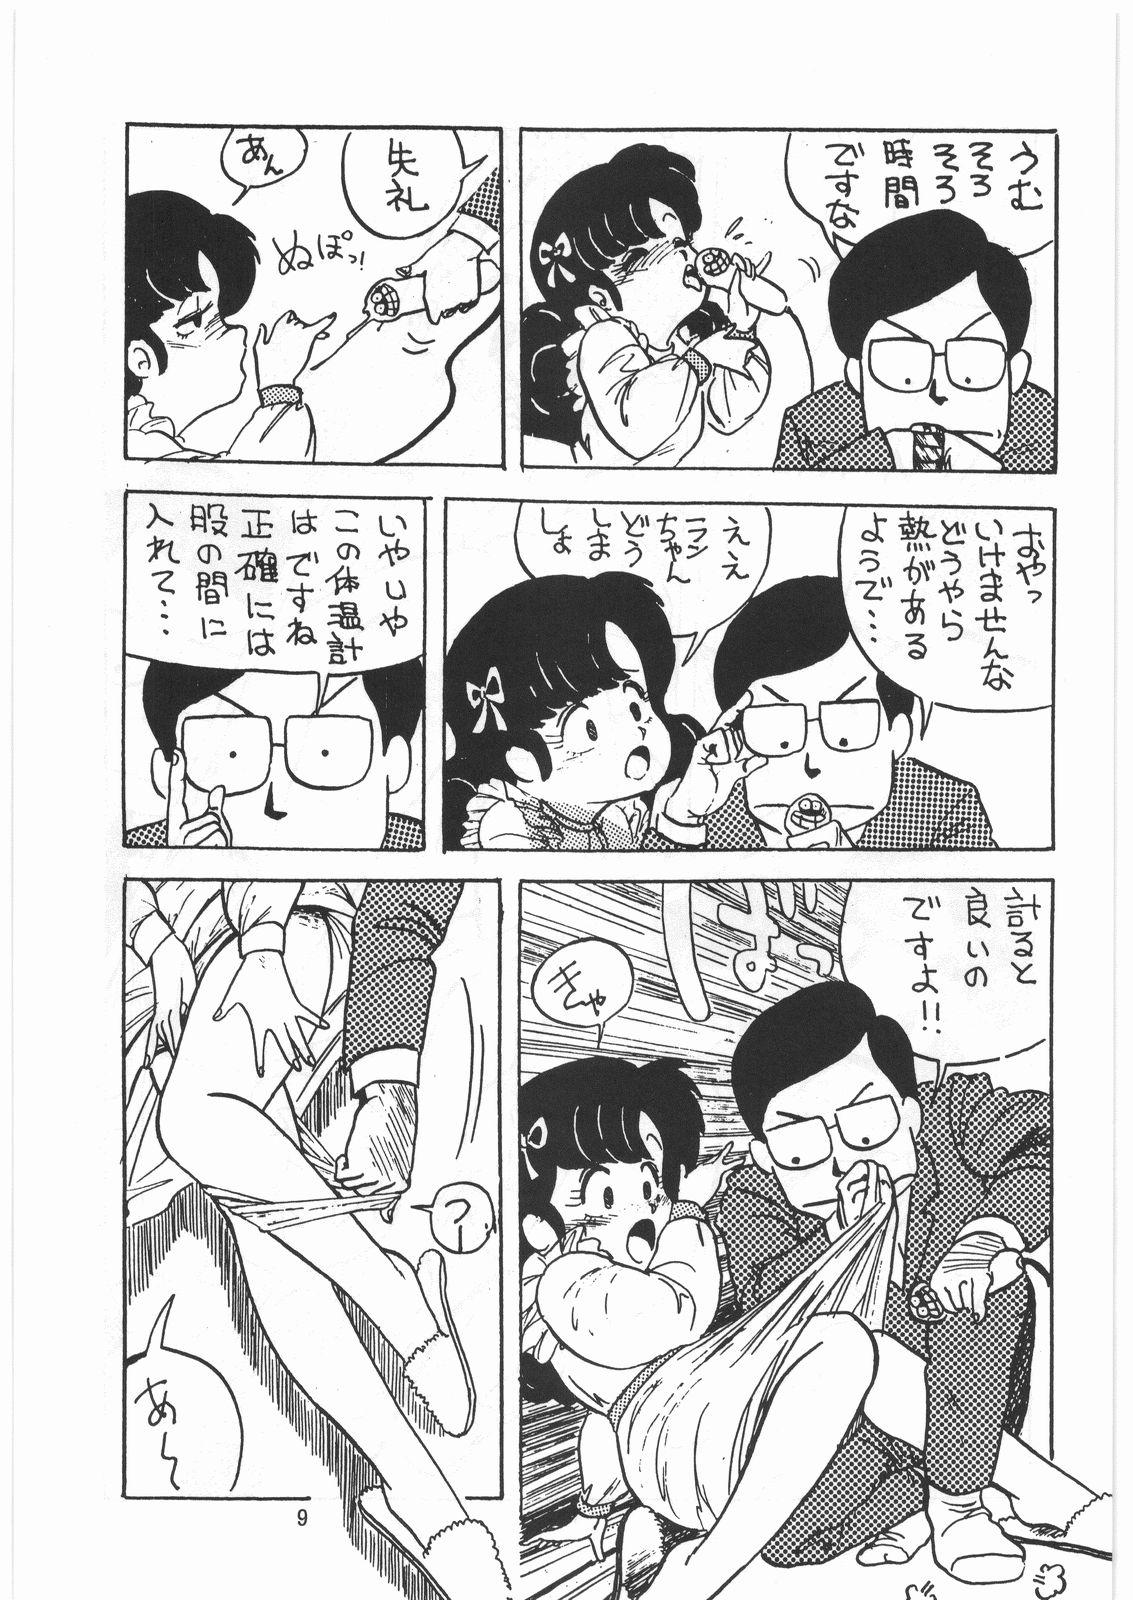 Blond Tororoimo Densetsu - Ten no Maki - Urusei yatsura Maison ikkoku Magical emi Creamy mami Fist of the north star Sasuga no sarutobi Hardcorend - Page 8